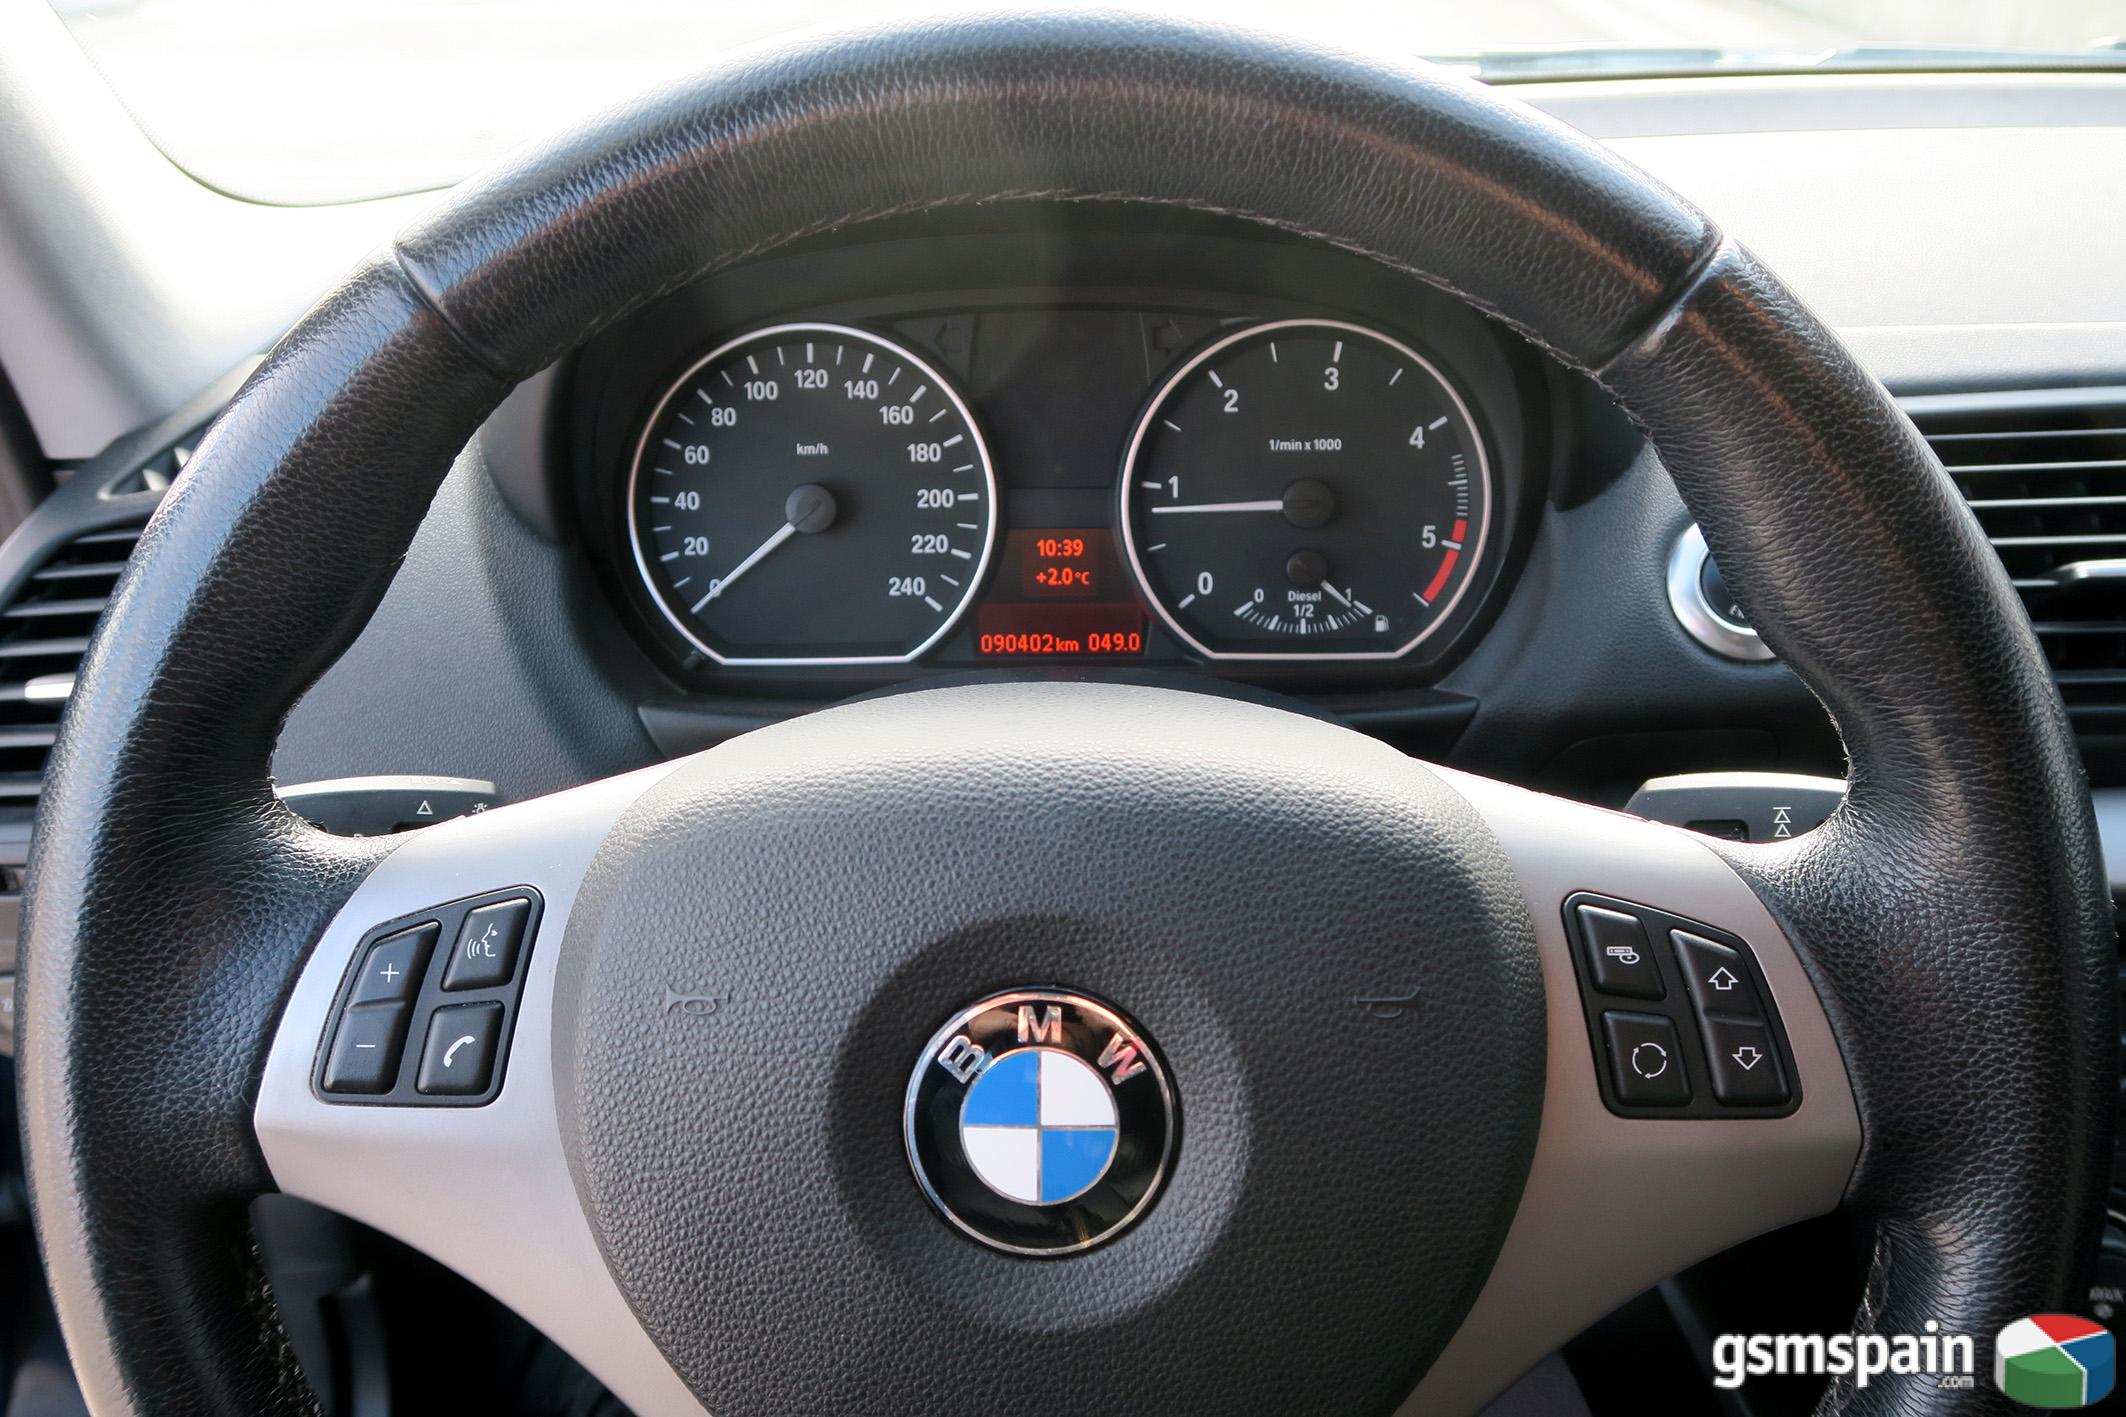 [VENDO] BMW 120d 5p 163cv 90.000Km 2007